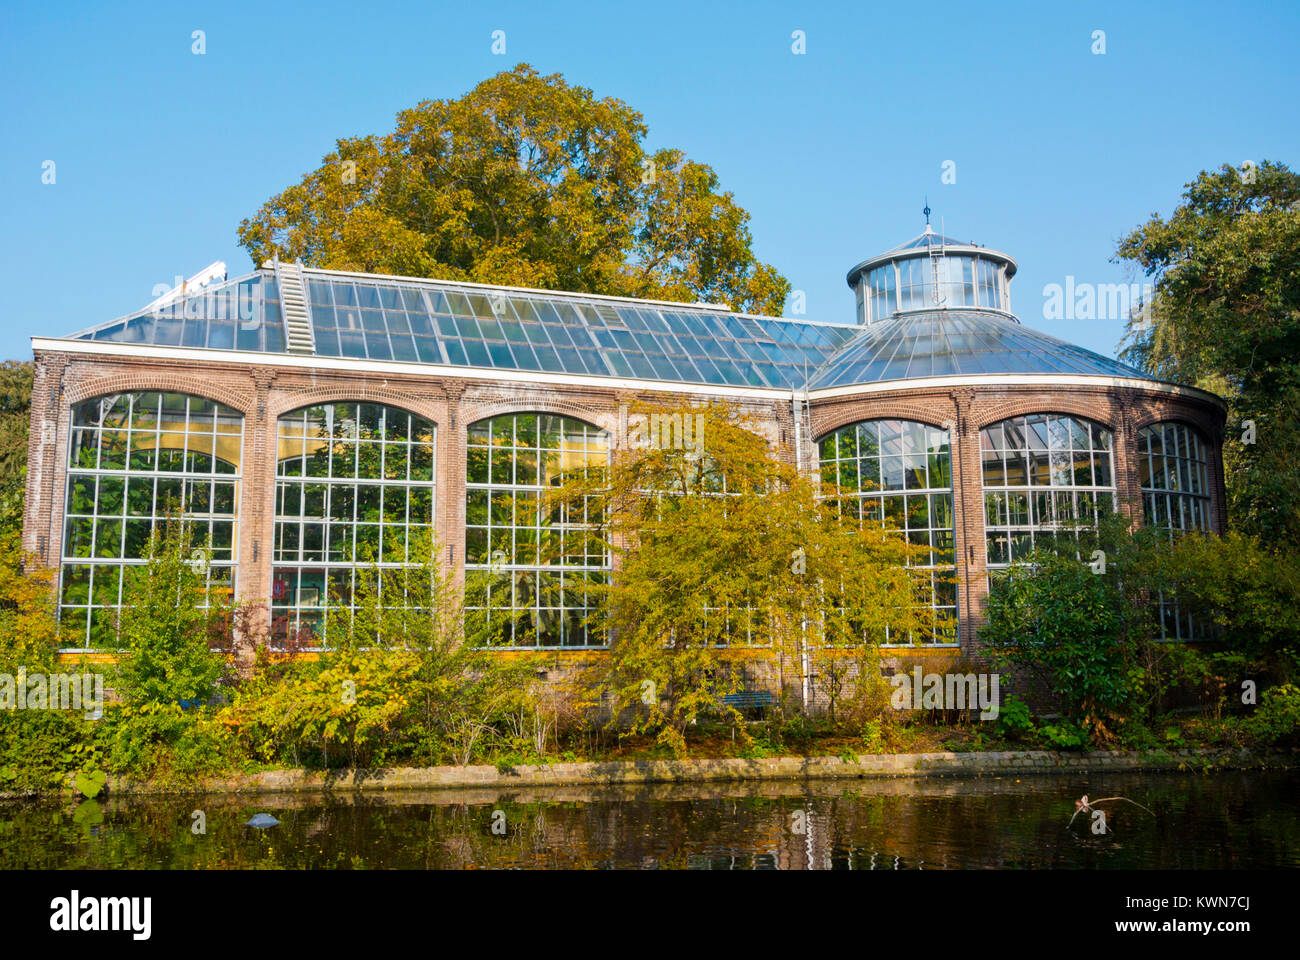 Historische Kas, historischen Gewächshaus, Hortus Botanicus botanischer Garten, Amsterdam, Niederlande Stockfoto